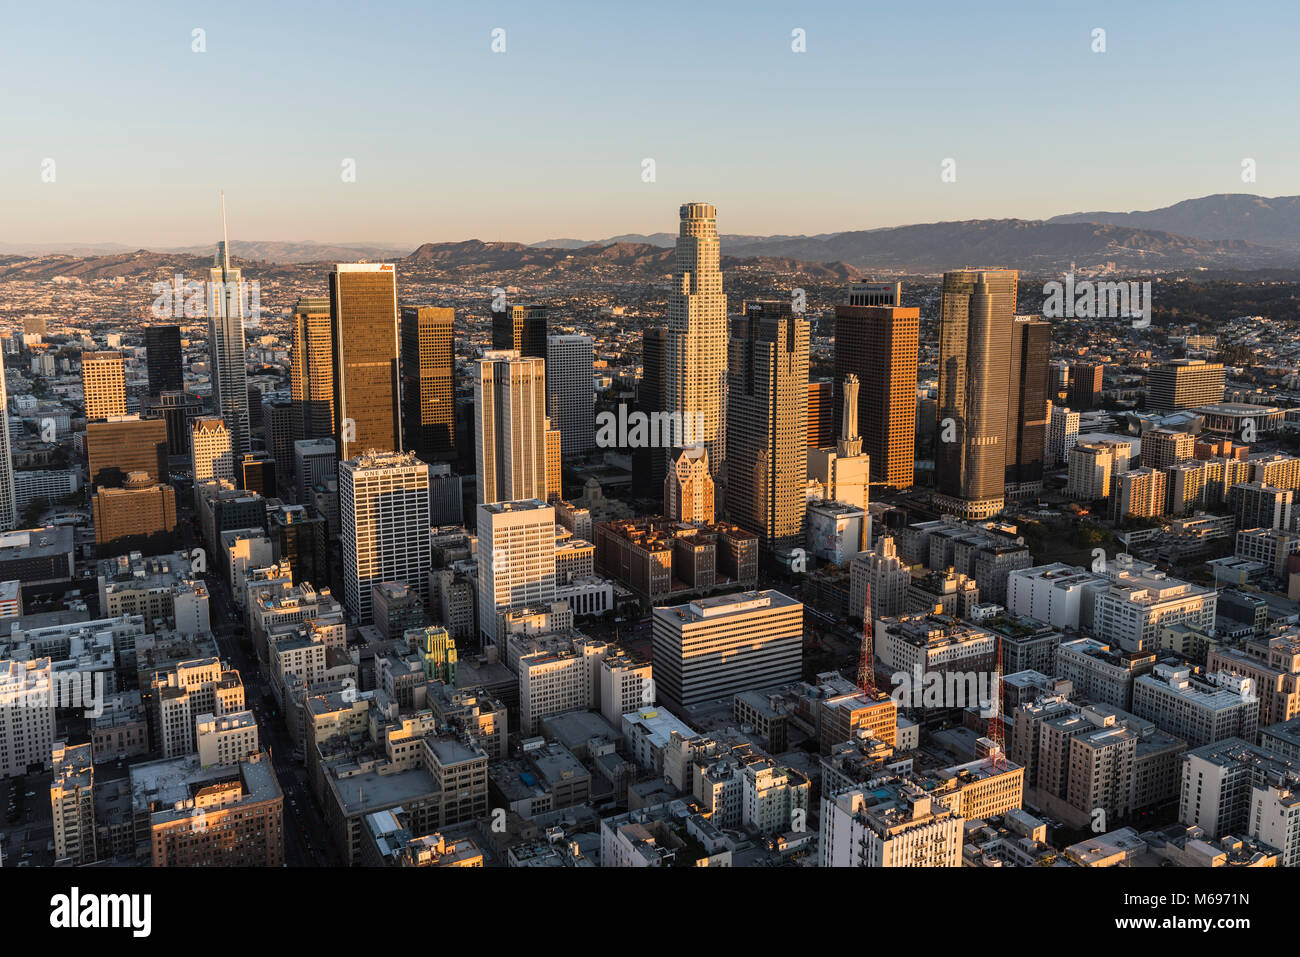 Los Angeles, Californie, USA - 20 Février 2018 : Tôt le matin vue aérienne de tours, rues et bâtiments dans le noyau urbain du centre-ville de LA. Banque D'Images